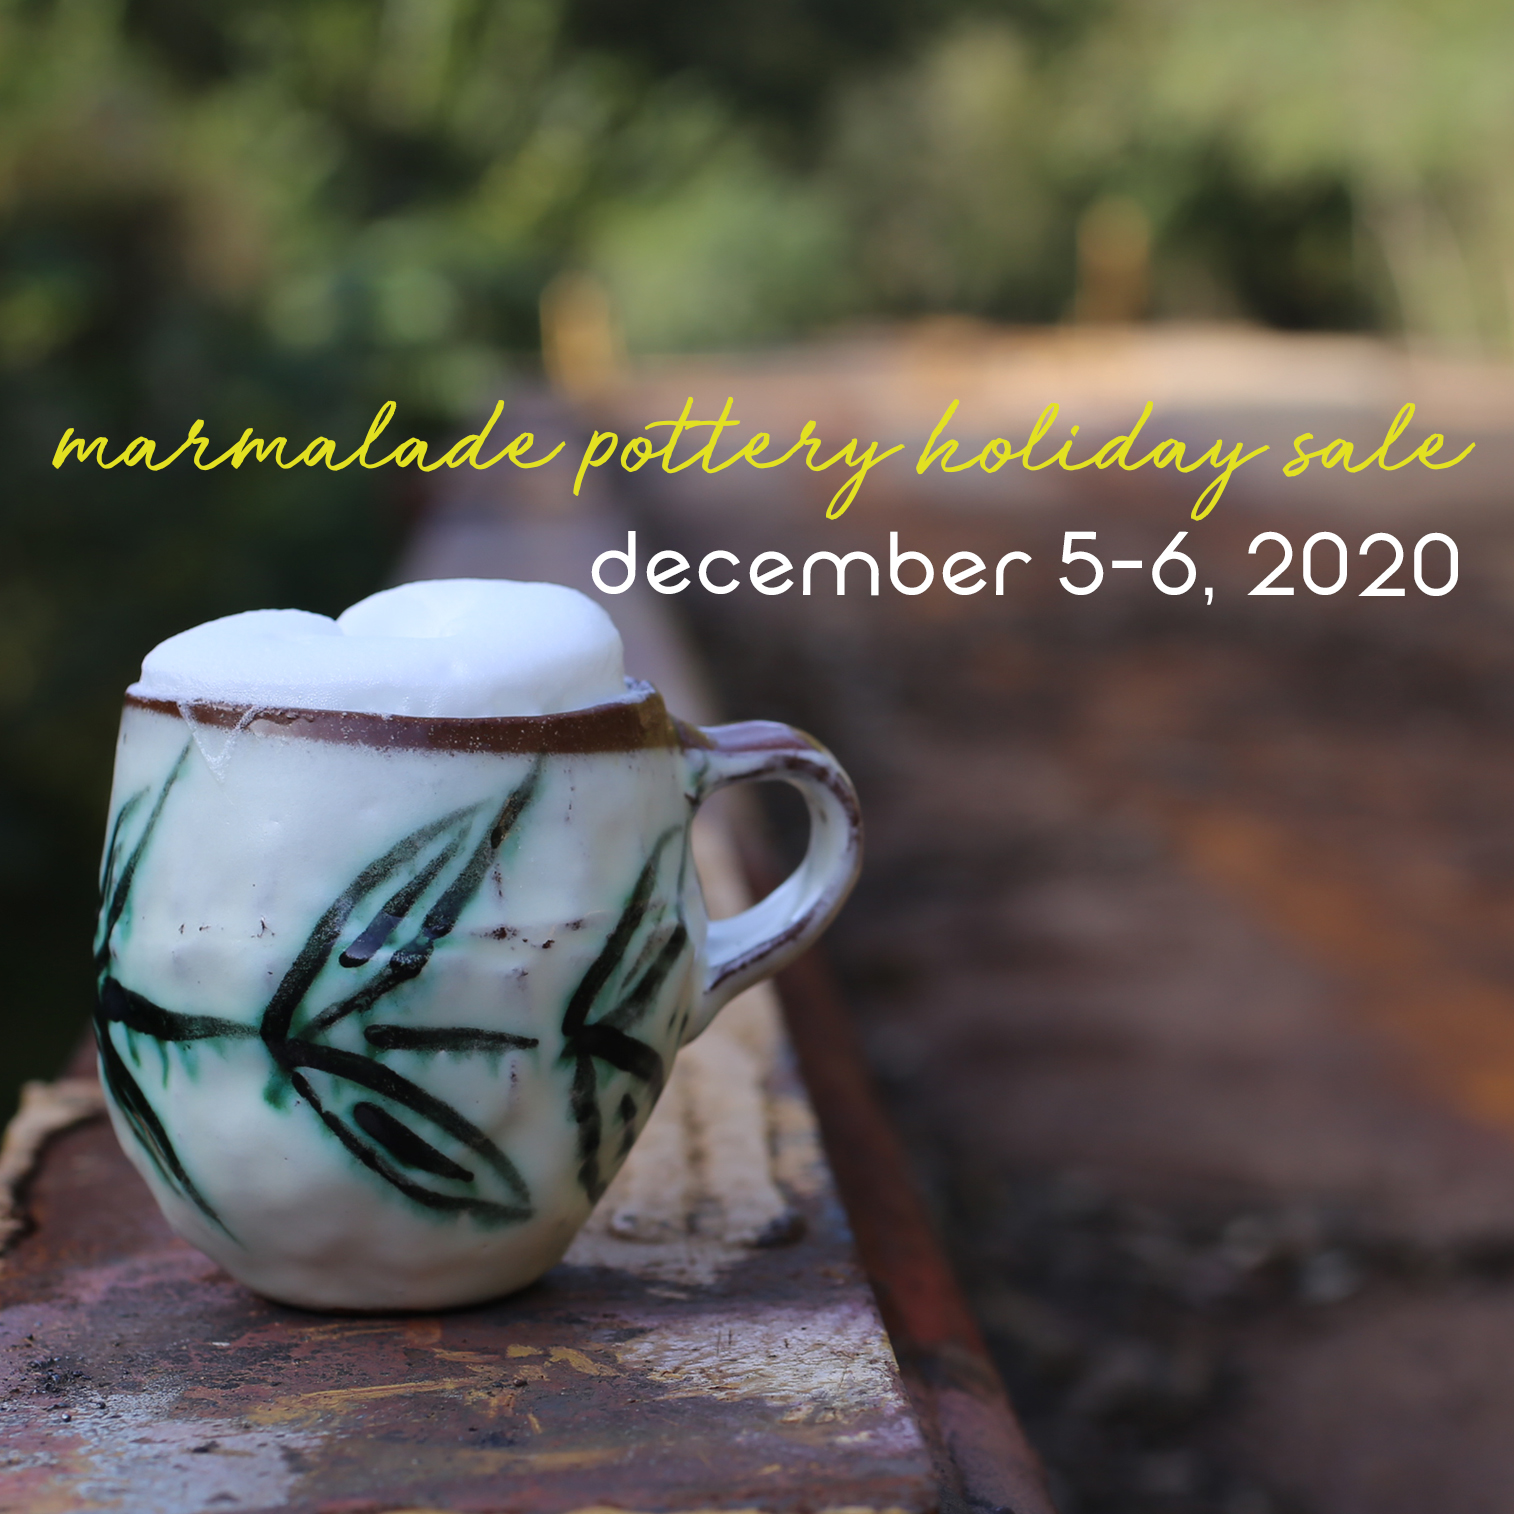 Maria Dondero * marmalade pottery *